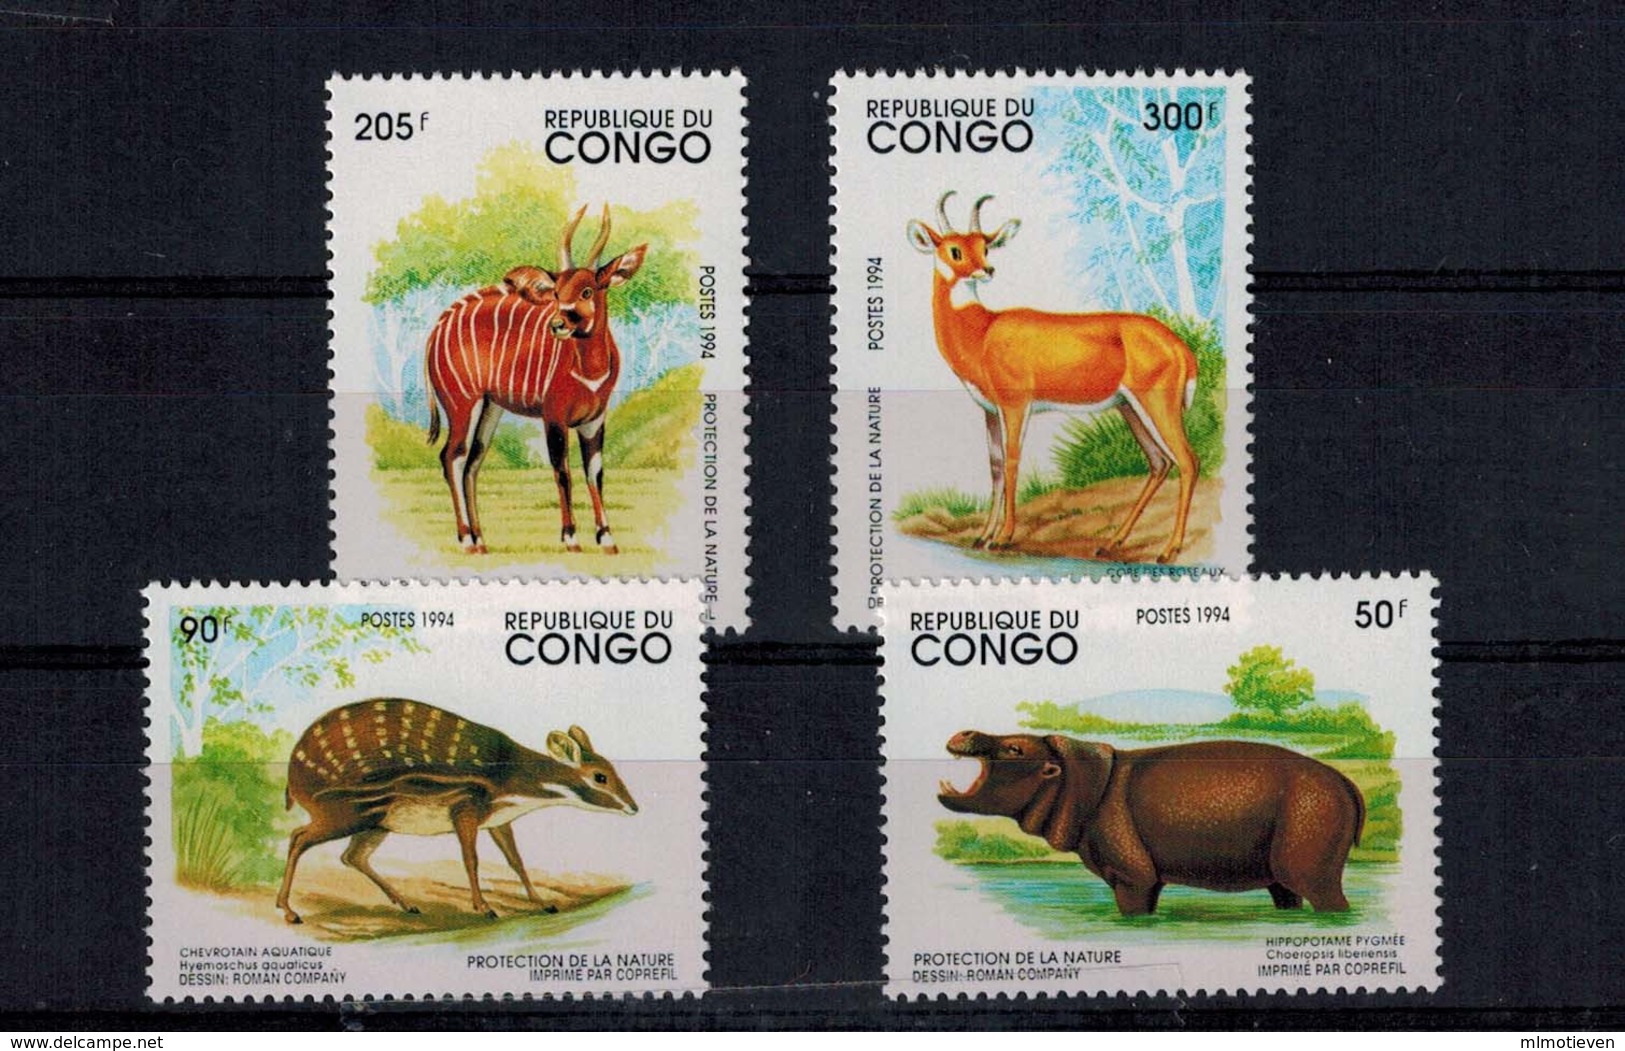 MDA -07102019_0009 MINT ¤ CONGO 1994 KOMPL. SETS ¤ ANIMALS OF THE WORLD - WILDE DIEREN - Game